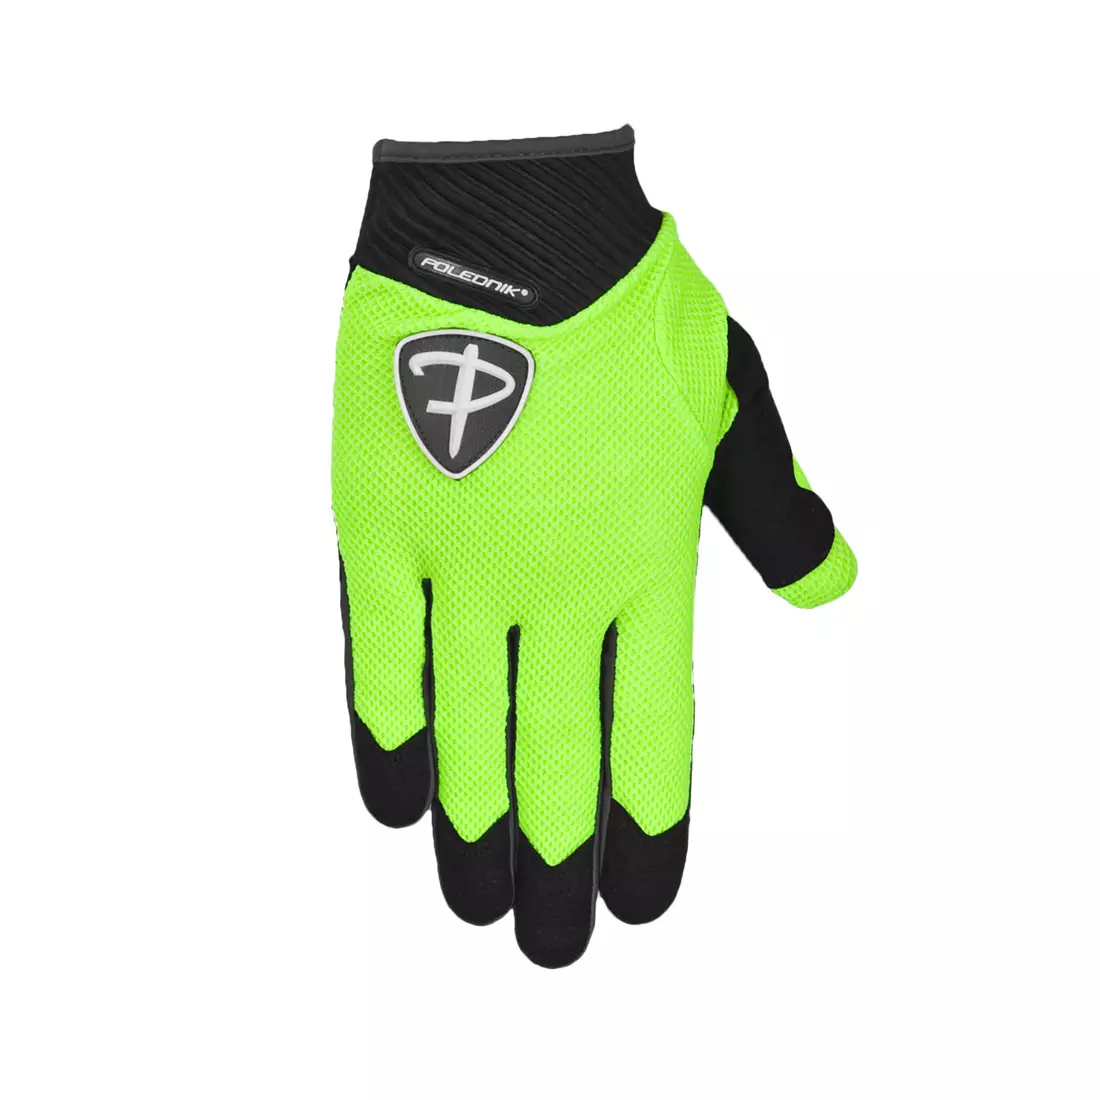 POLEDNIK XR Fluoro-Handschuhe